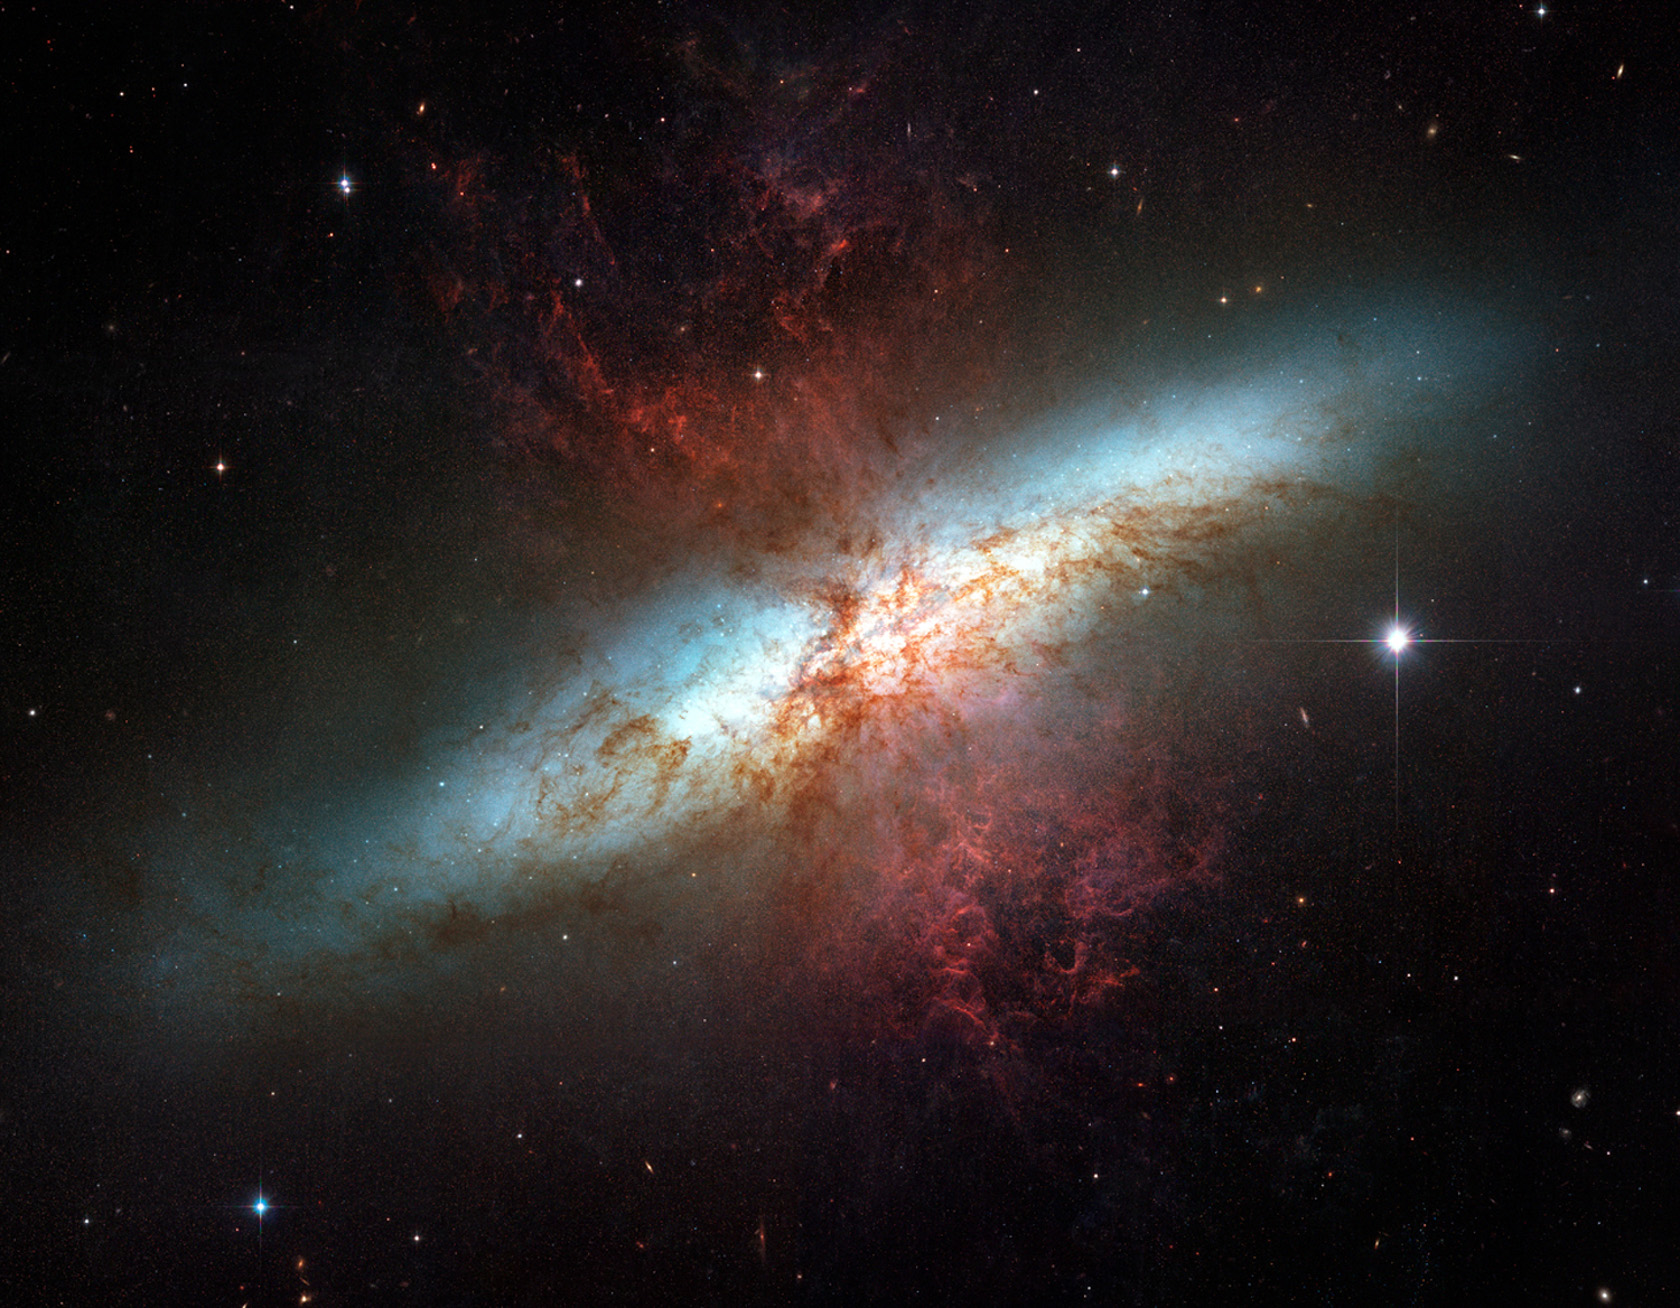 La Galassia Sigaro, conosciuta nota anche come M82, è una galassia nella costellazione dell'Orsa Maggiore. Si trova a circa 12 milioni di anni luce